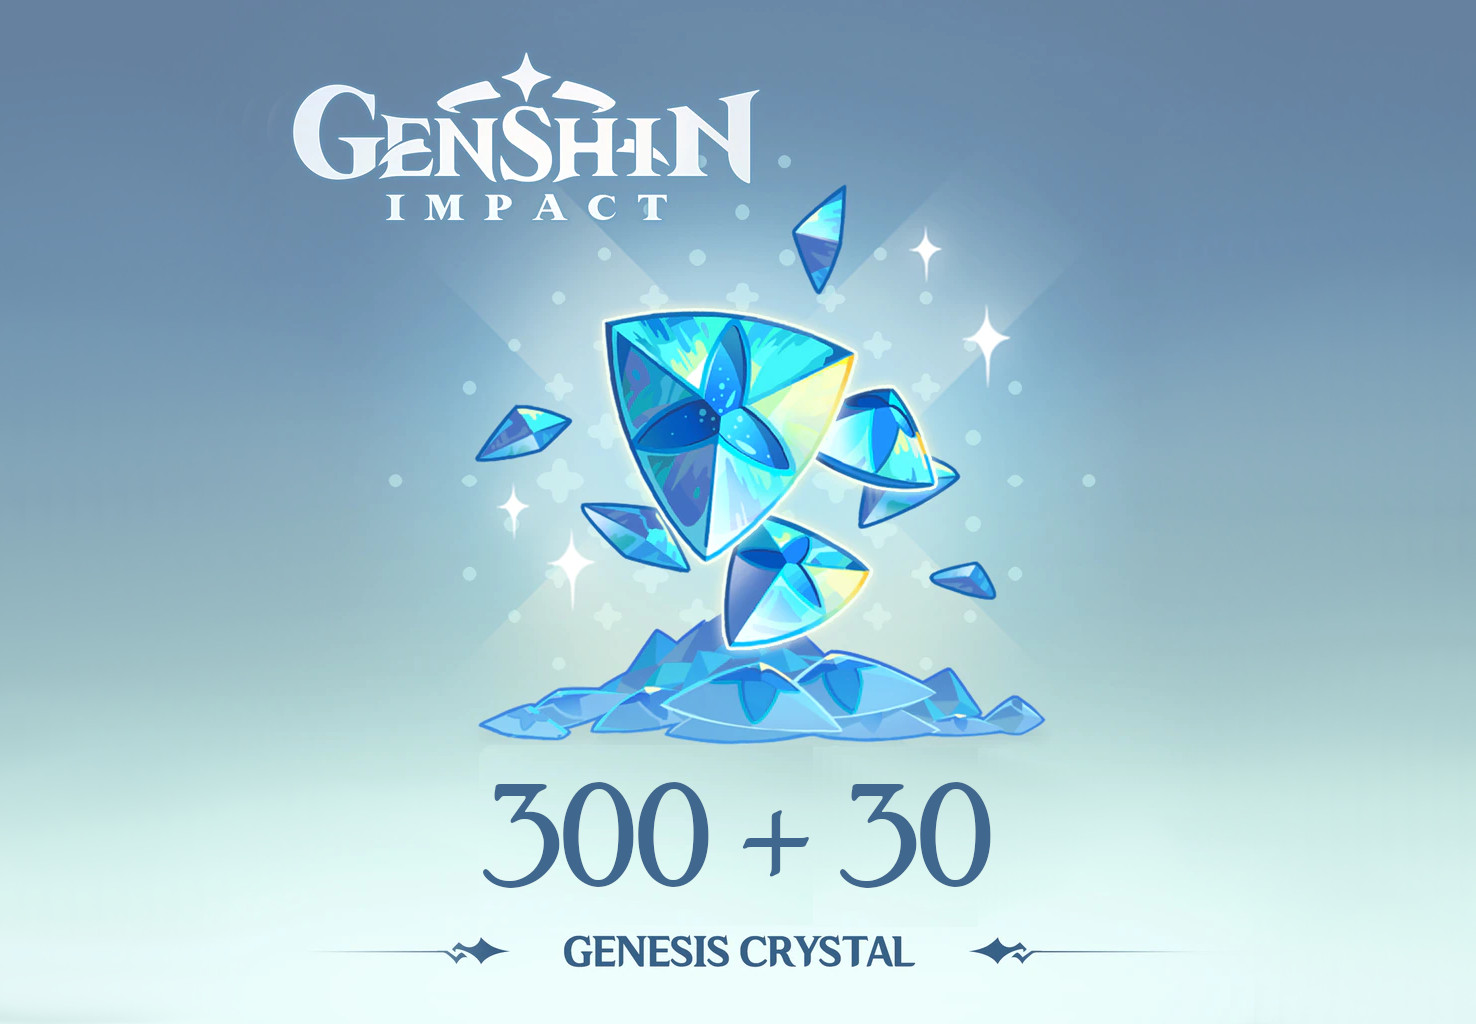 [$ 5.37] Genshin Impact - 300 + 30 Genesis Crystals Reidos Voucher